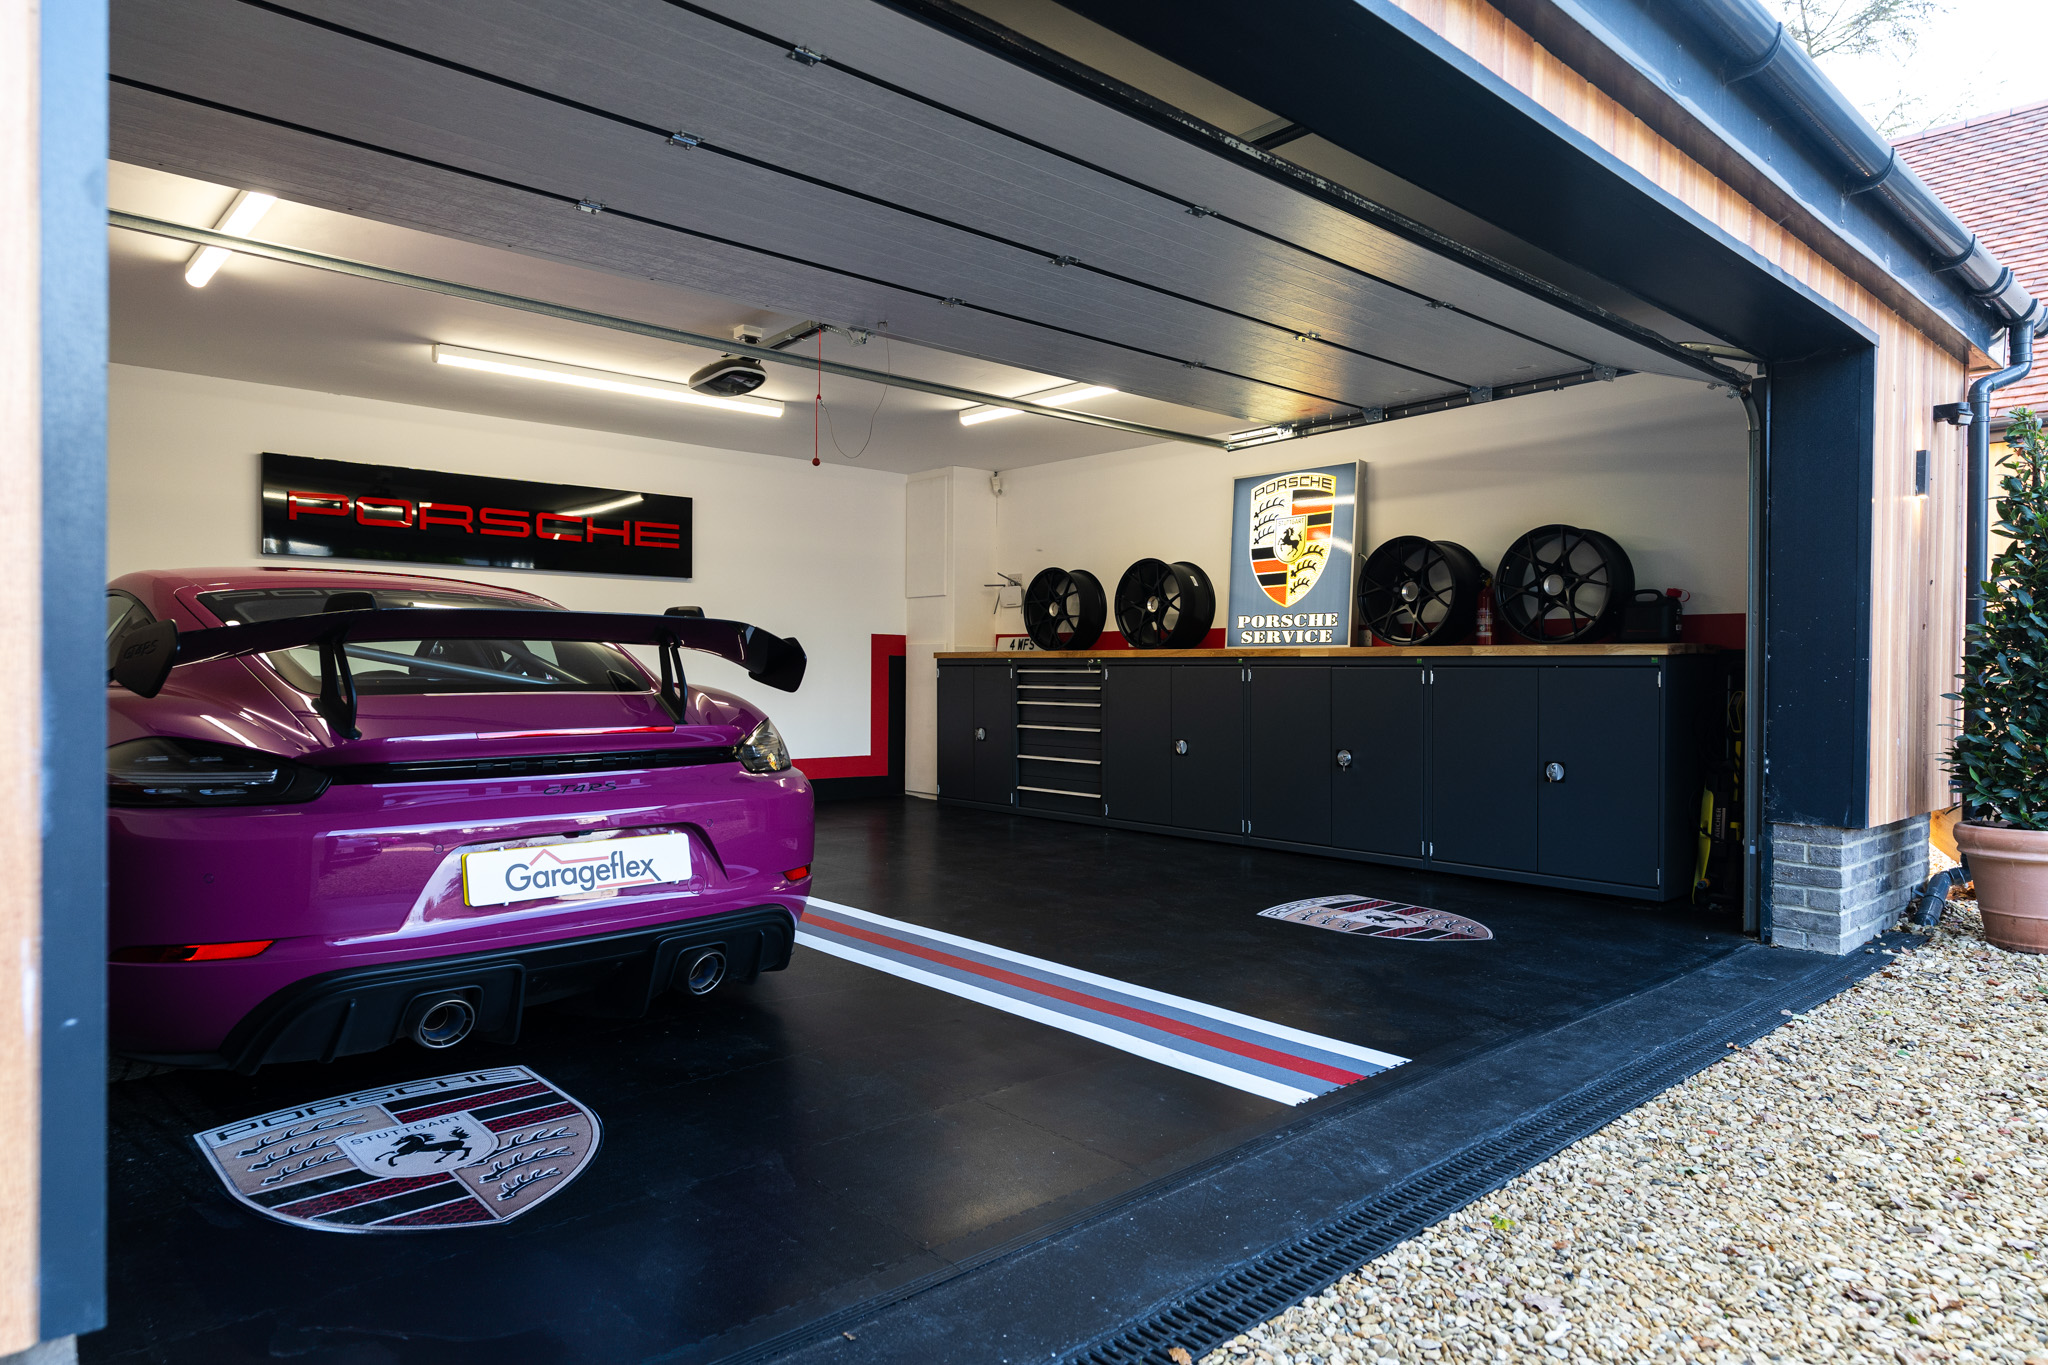 Garageflex range of garage floor tiles